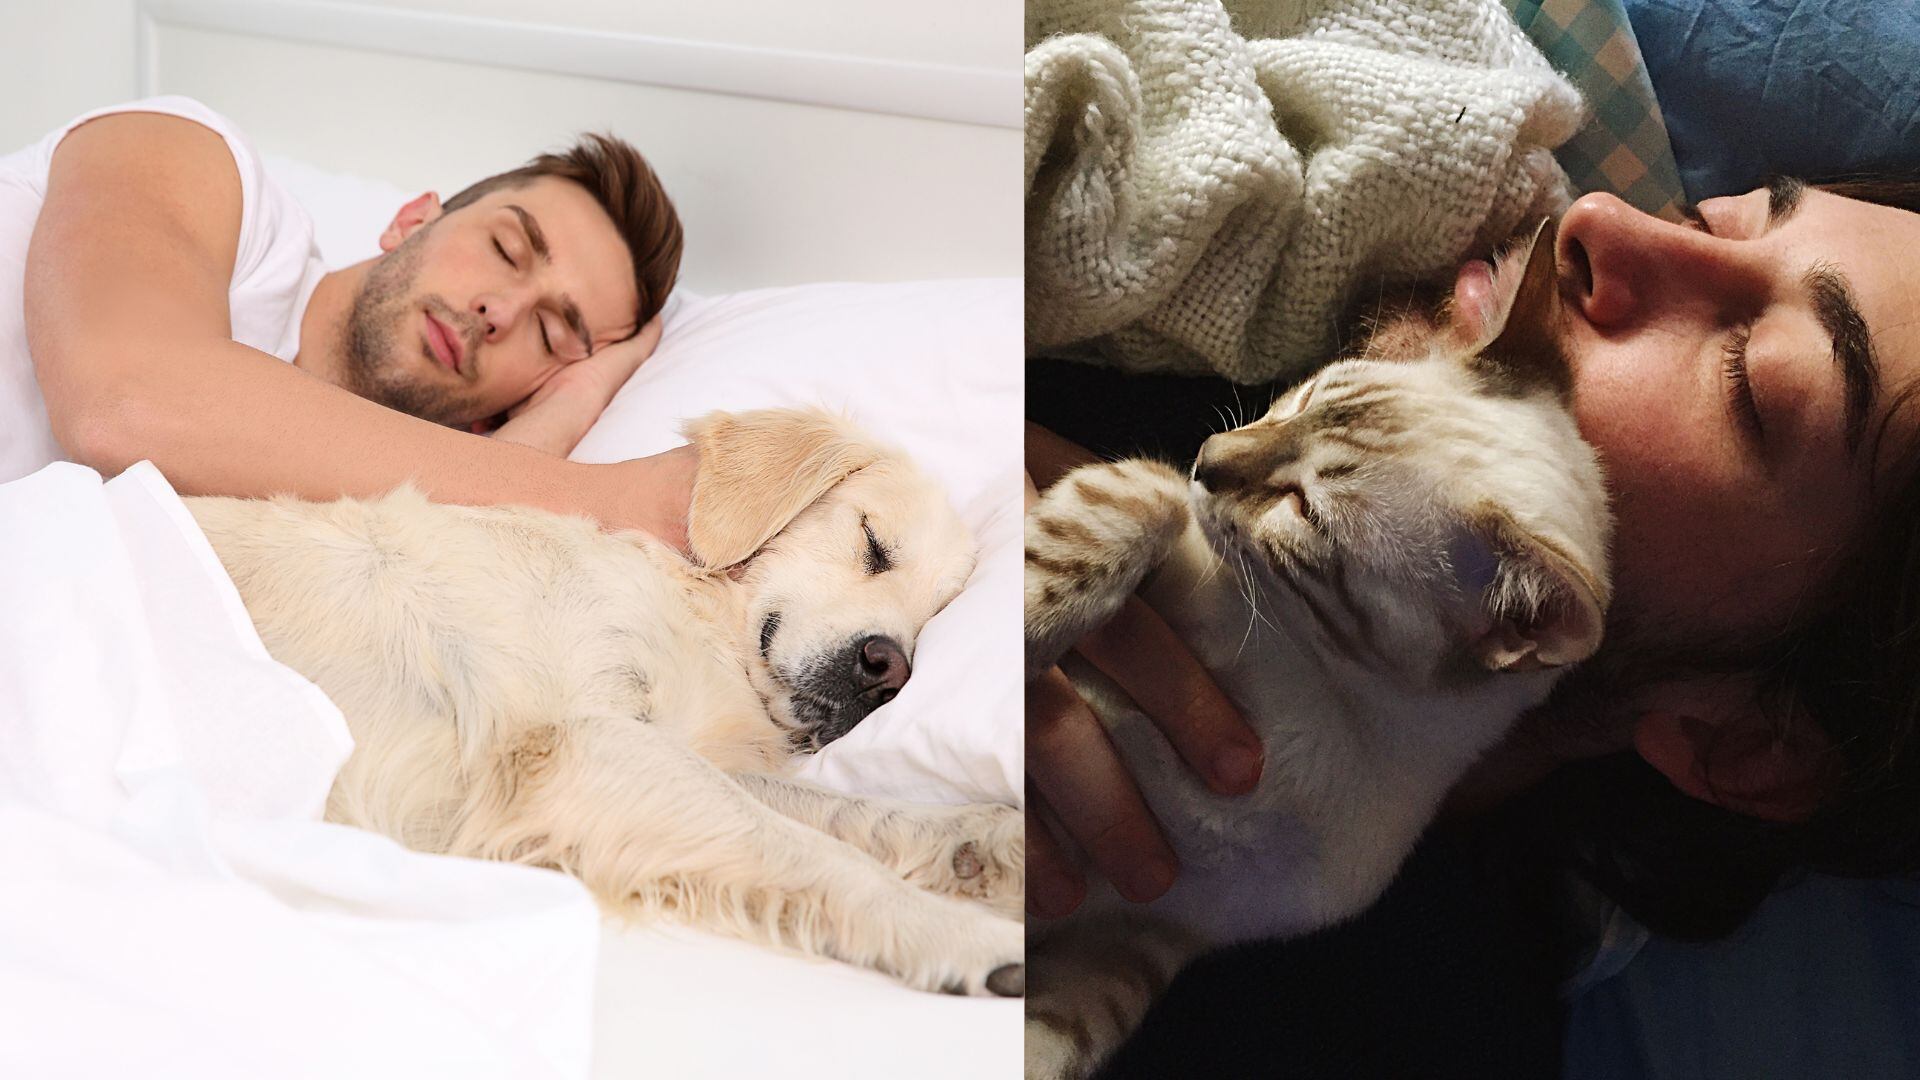 Aprenda cómo cambiar el hábito de su mascota de dormir en la cama y establezca un espacio propio para ella con técnicas recomendadas por expertos.